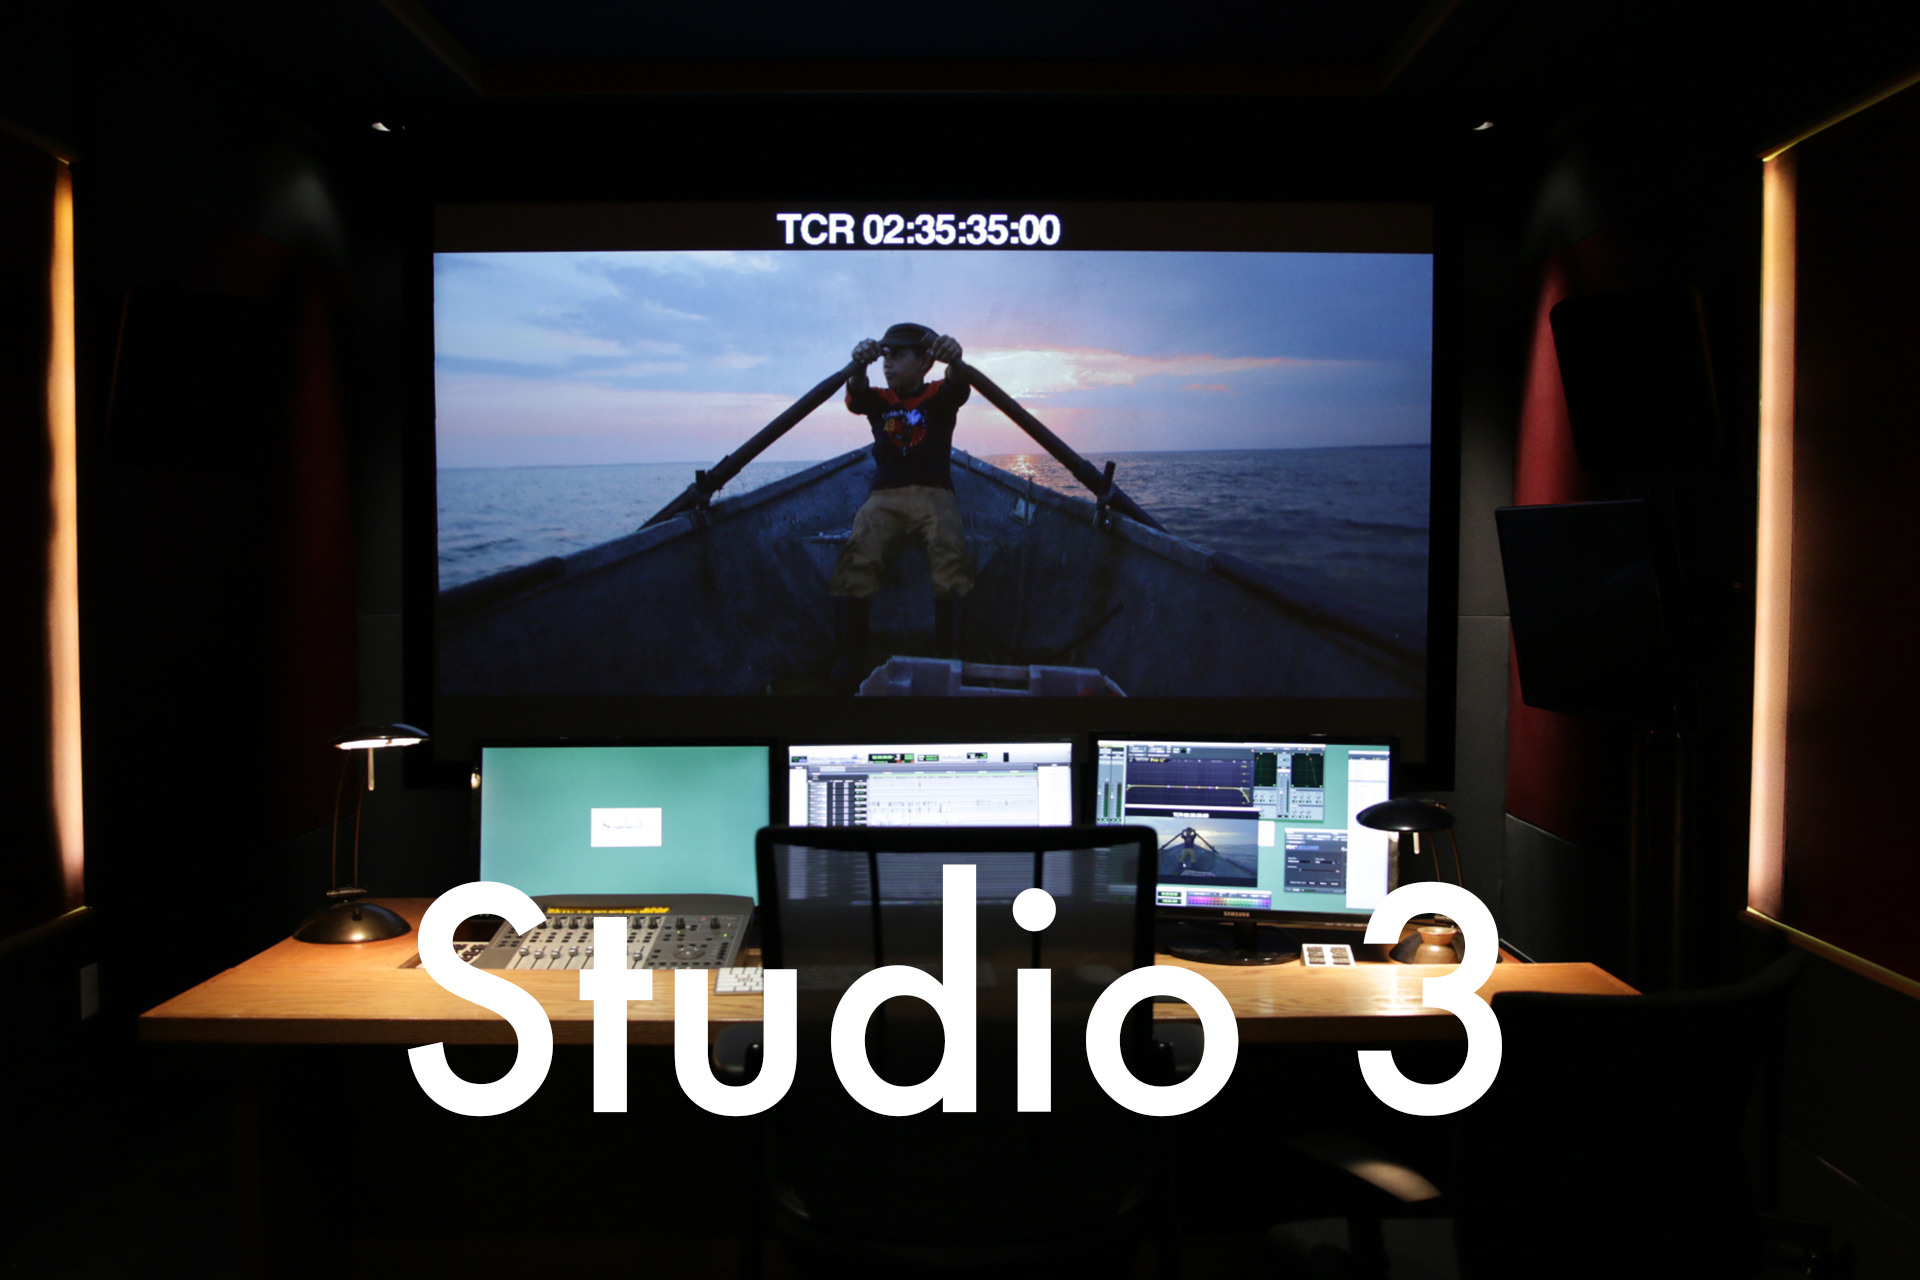 Studio 3